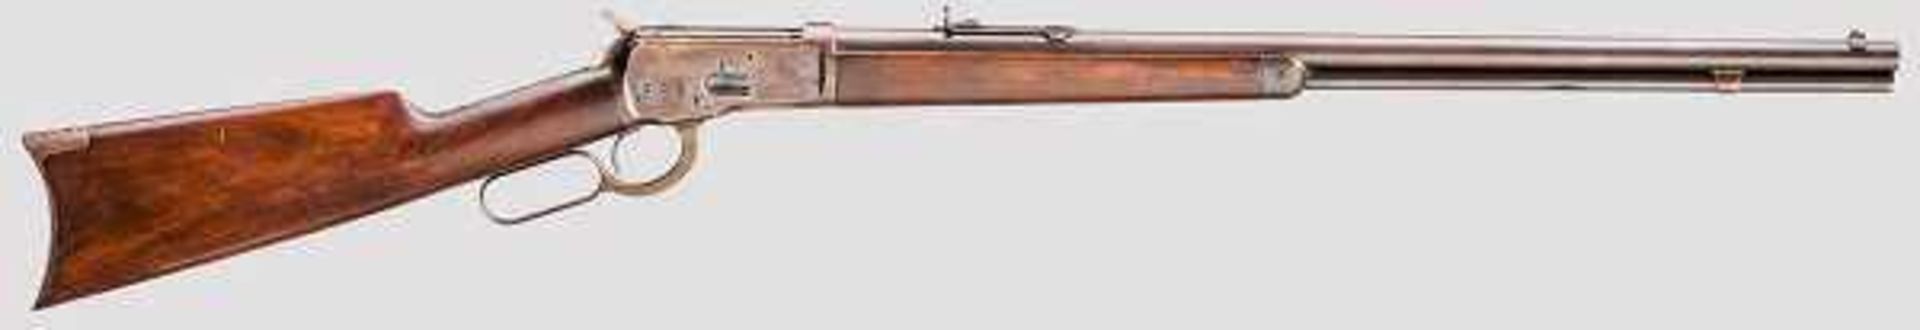 Winchester Mod. 1892 Kal. .32 WCF, Nr. 34803. Guter Lauf, Länge 22". Fertigung 1893. Dt. Beschuss.